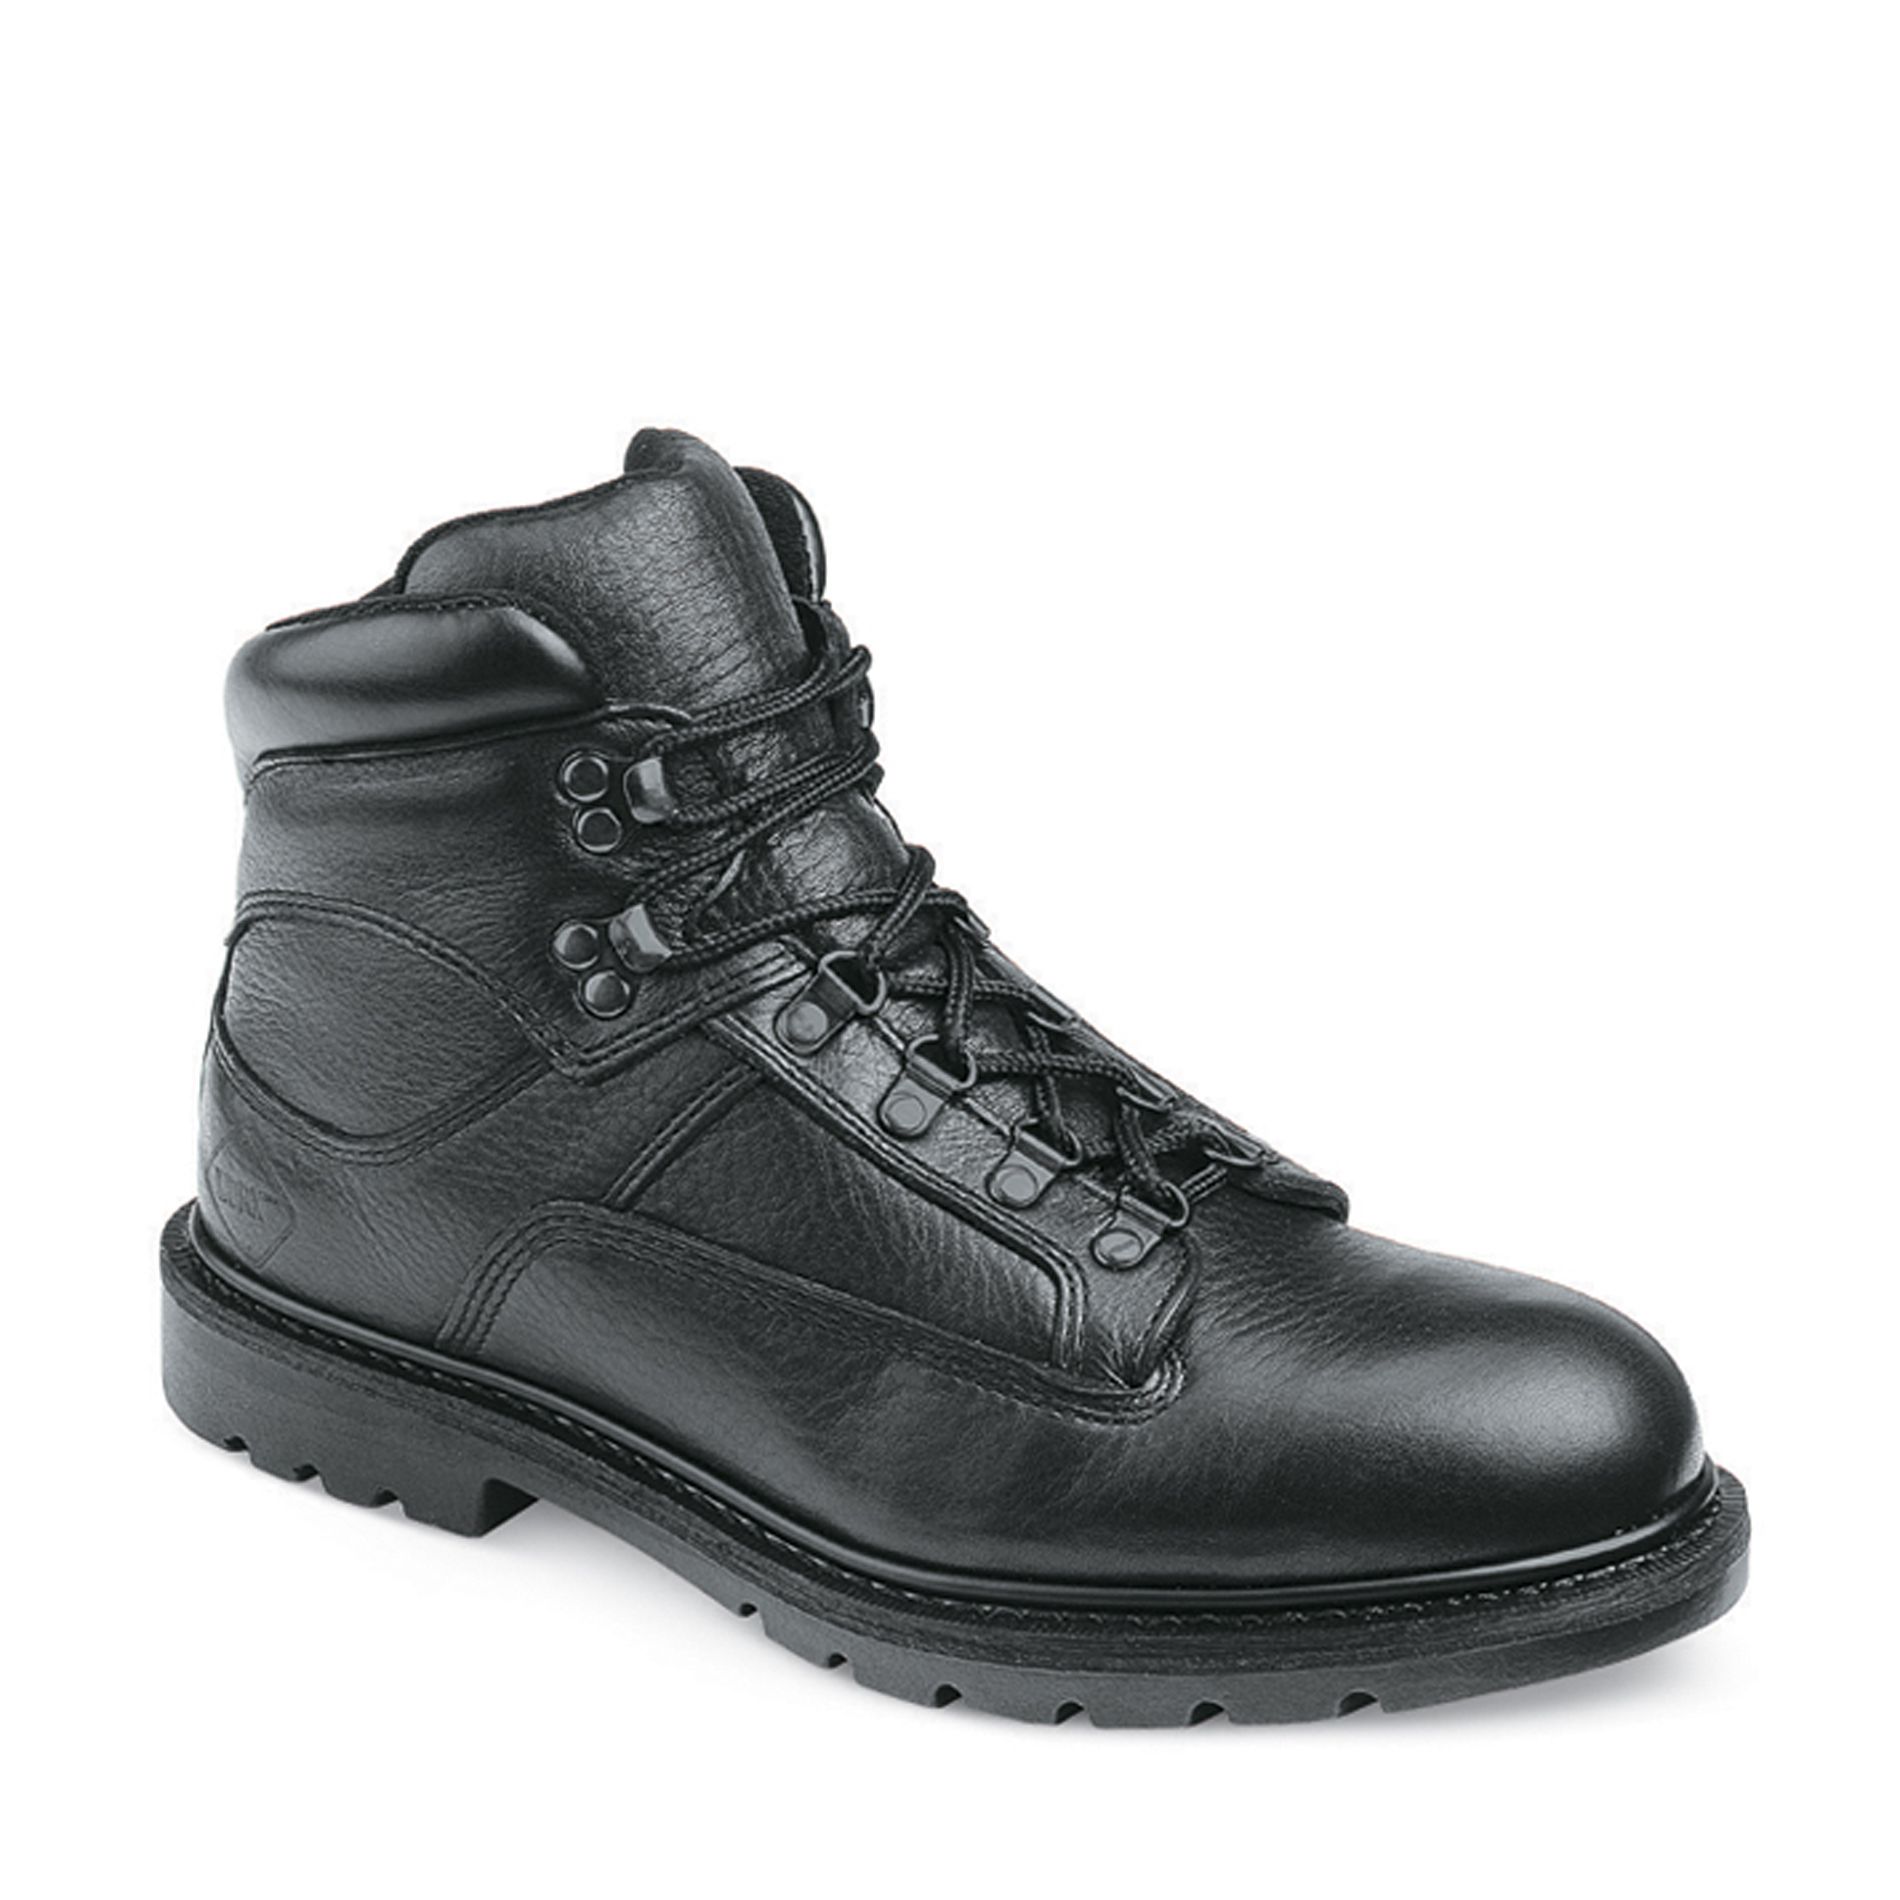 Men's 6" Steel Toe Boot 5565 - Black